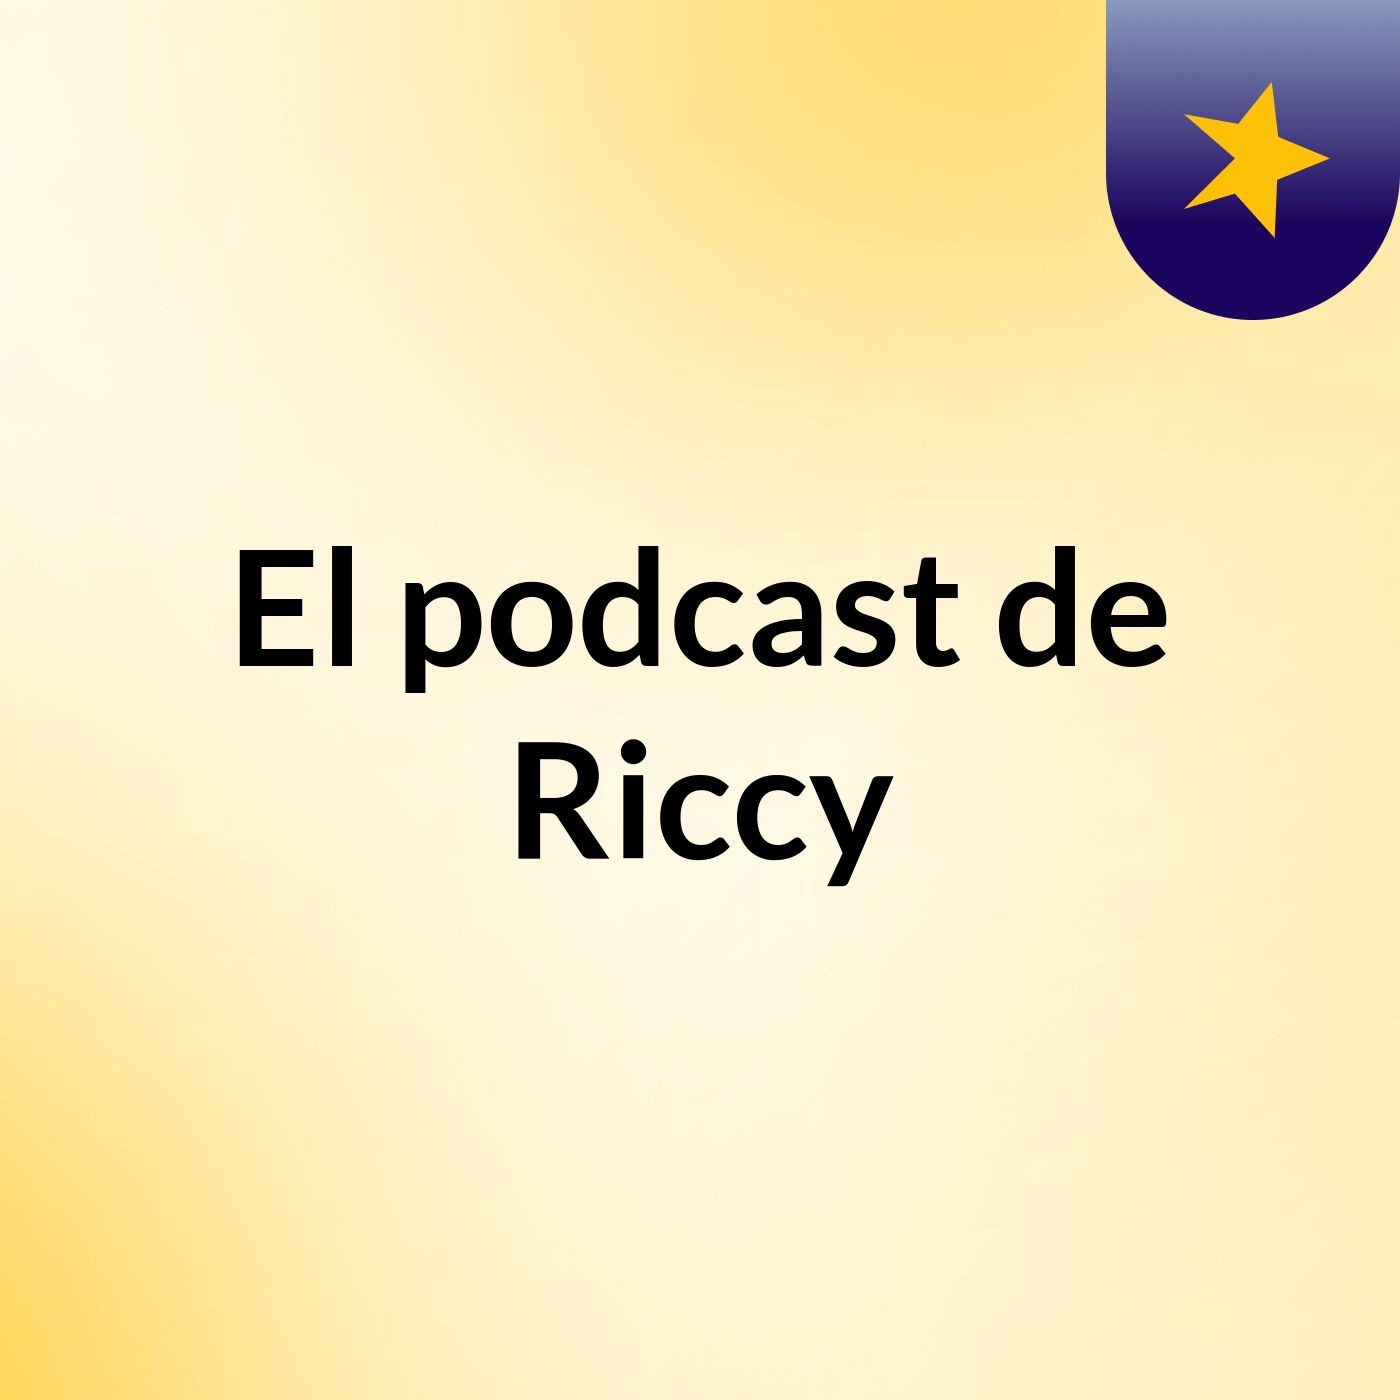 El podcast de Riccy